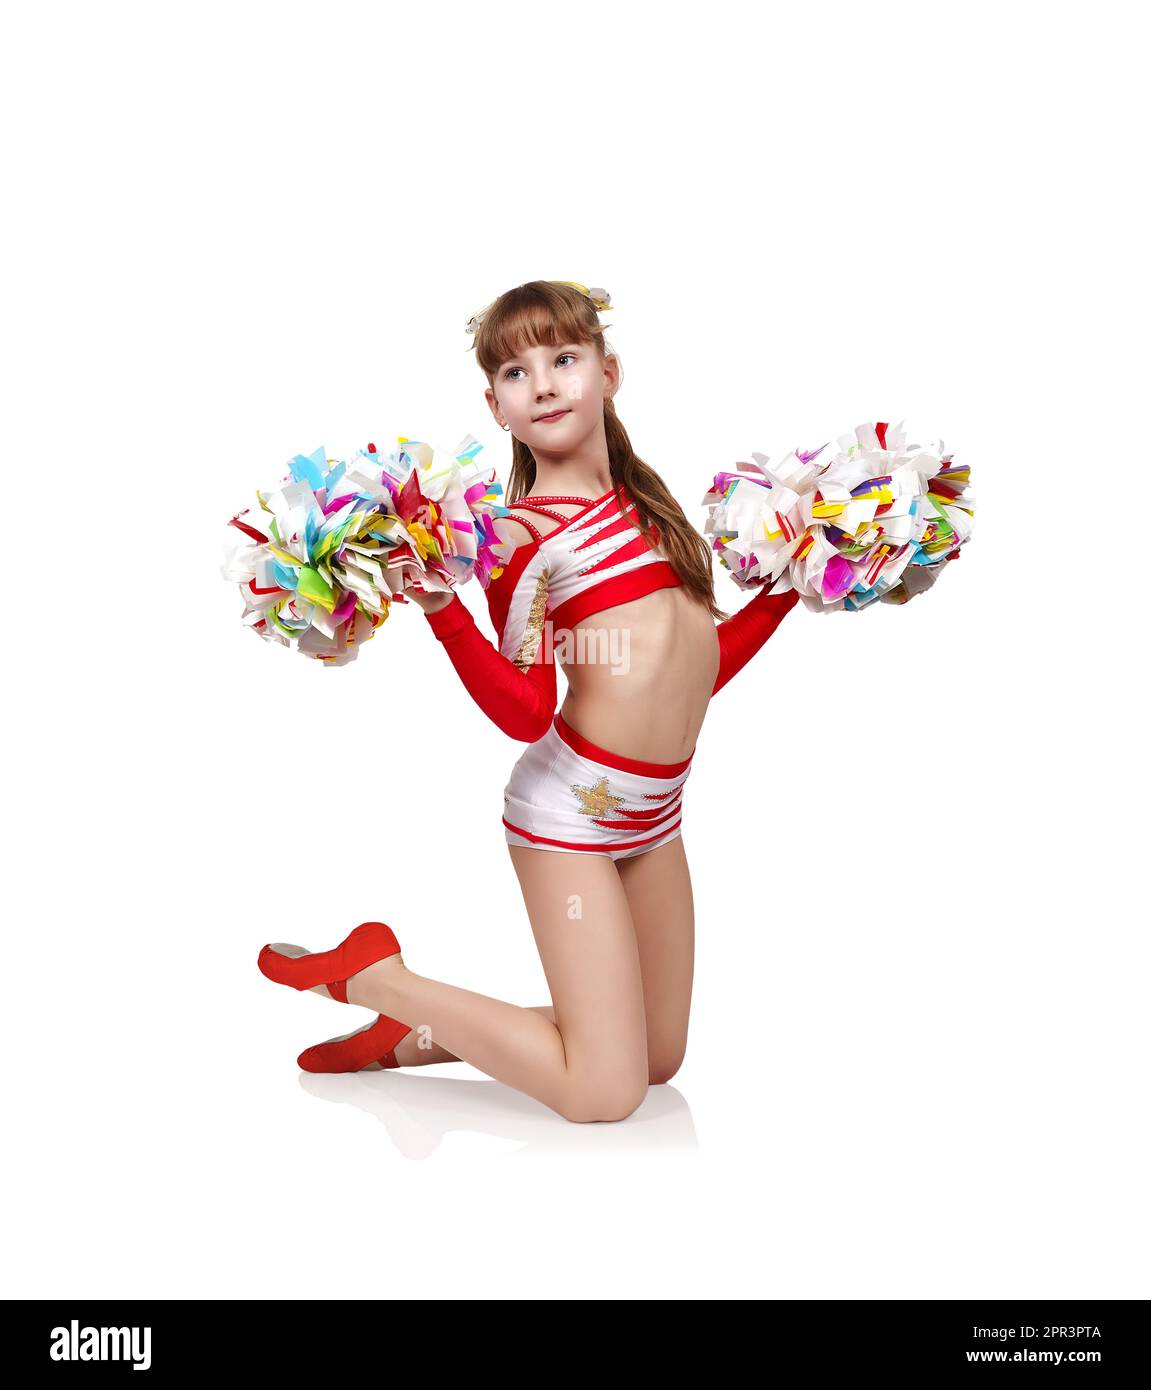 Giovane ragazza cheerleader in uniforme inginocchiata con pompon Foto Stock